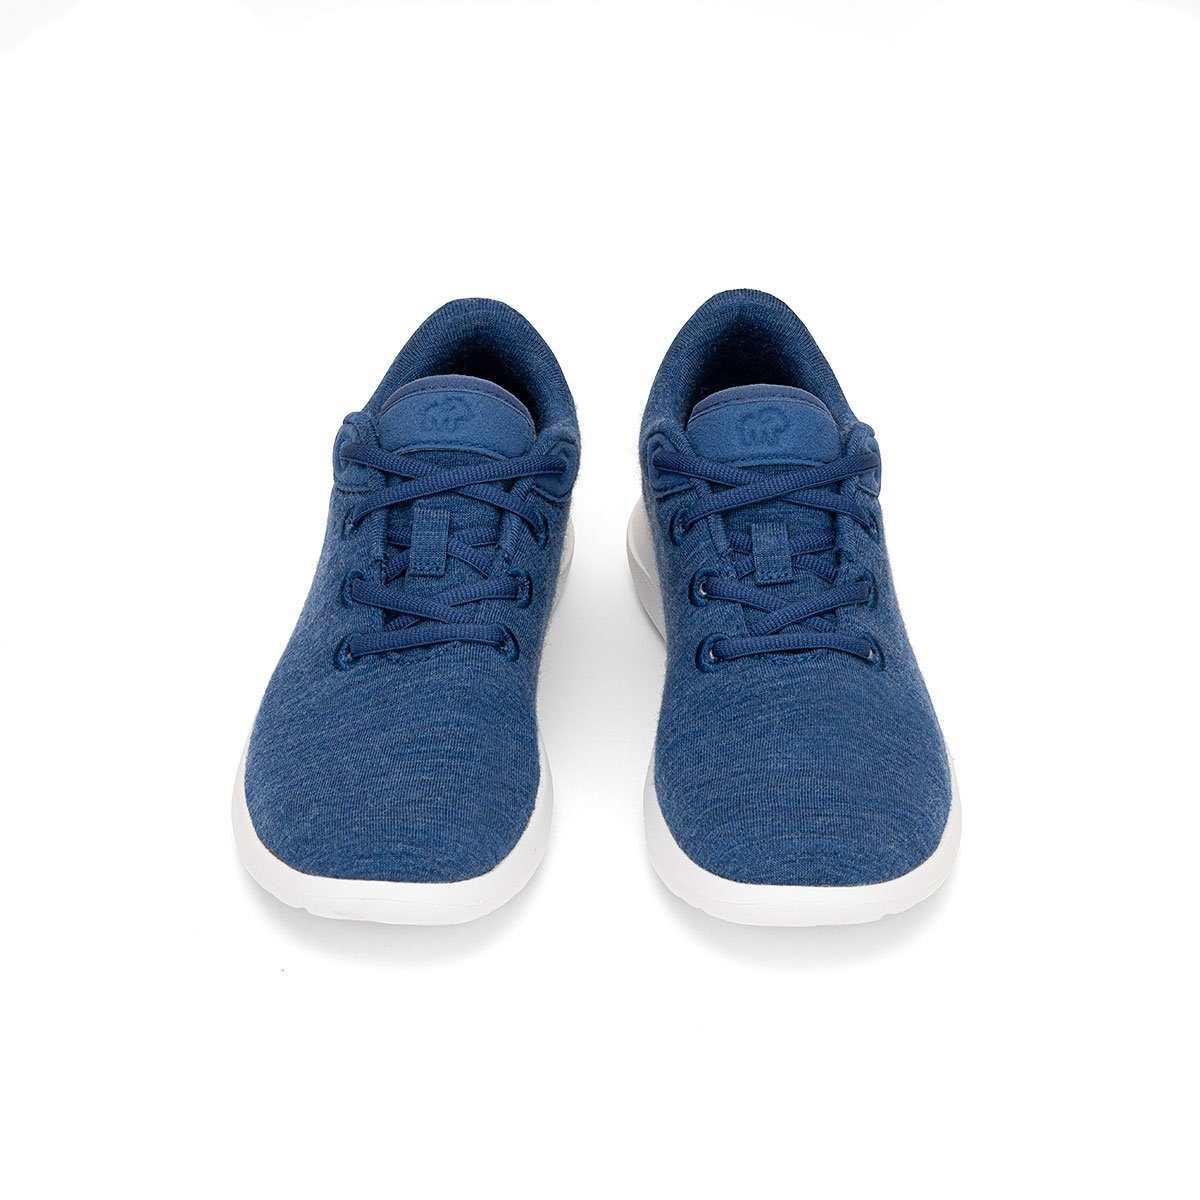 Lace- Schuhe Sportschuhe Bequeme jeansblau merinos merinoshoes.de Sneaker Up, aus Merinowolle weicher - blaue atmungsaktive Damen